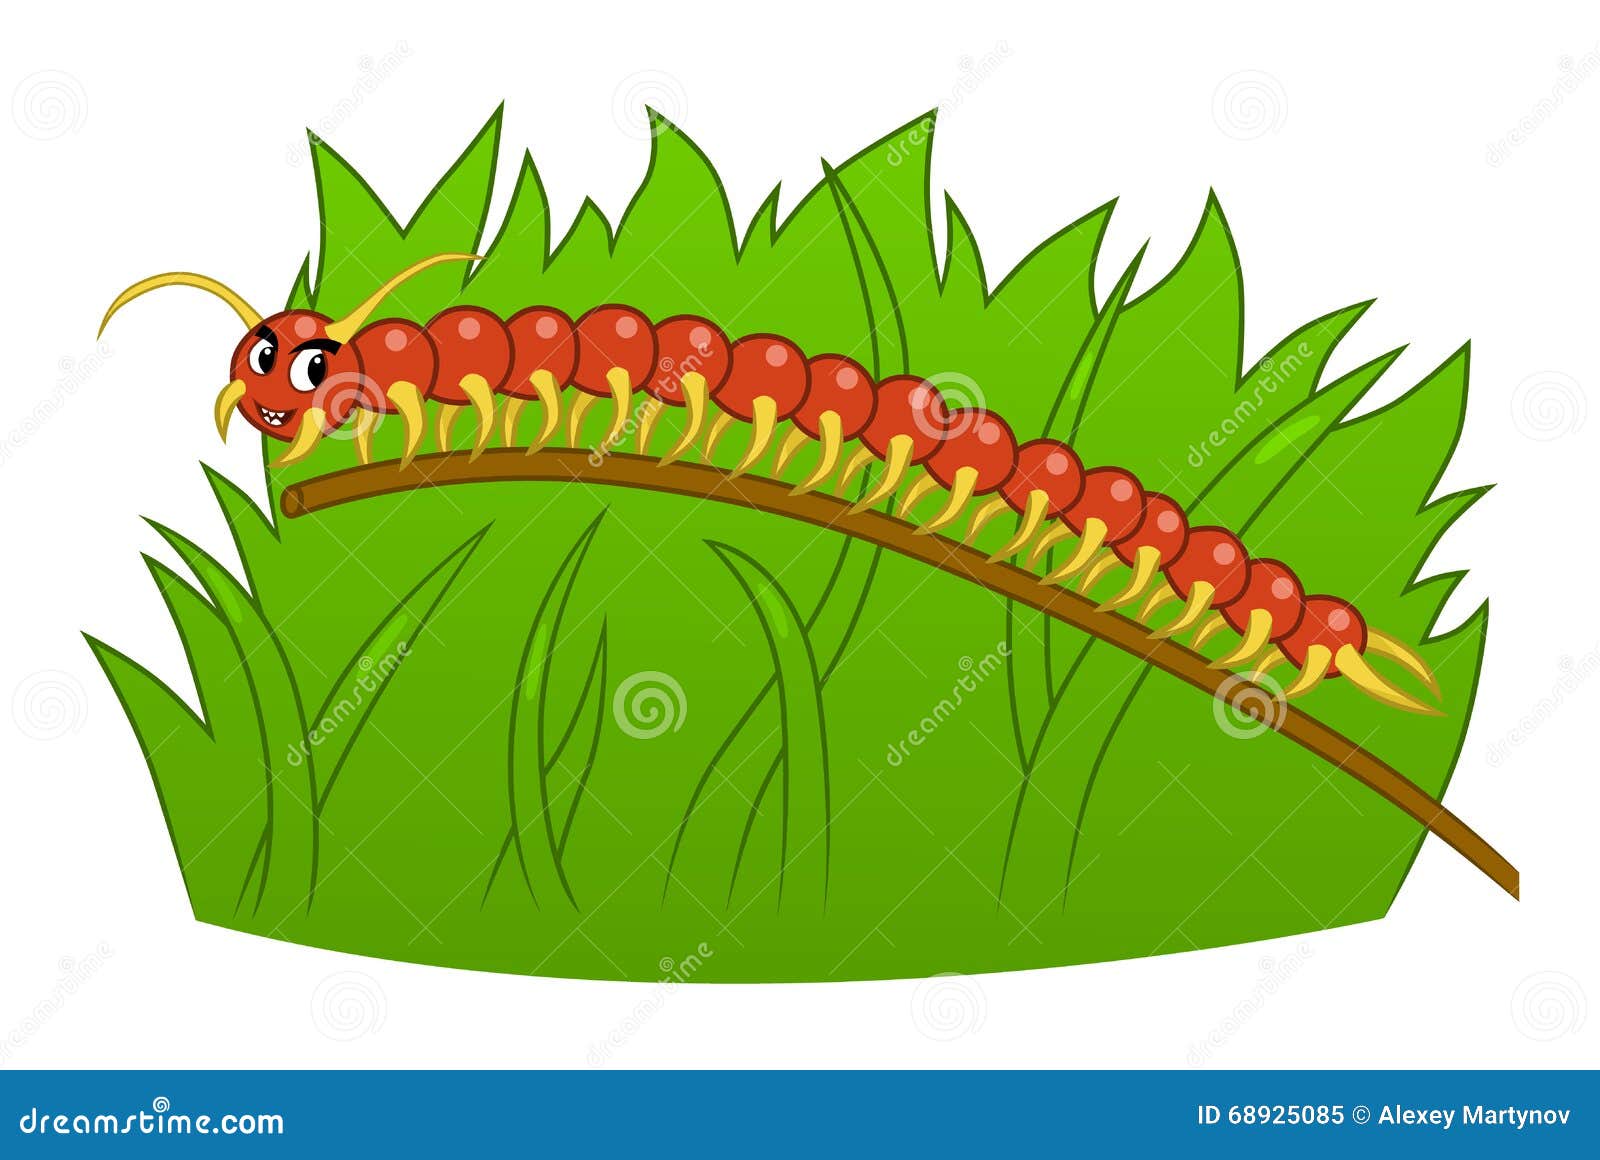 Cartoon Centipede Stock Illustrations – 1,526 Cartoon Centipede Stock  Illustrations, Vectors & Clipart - Dreamstime